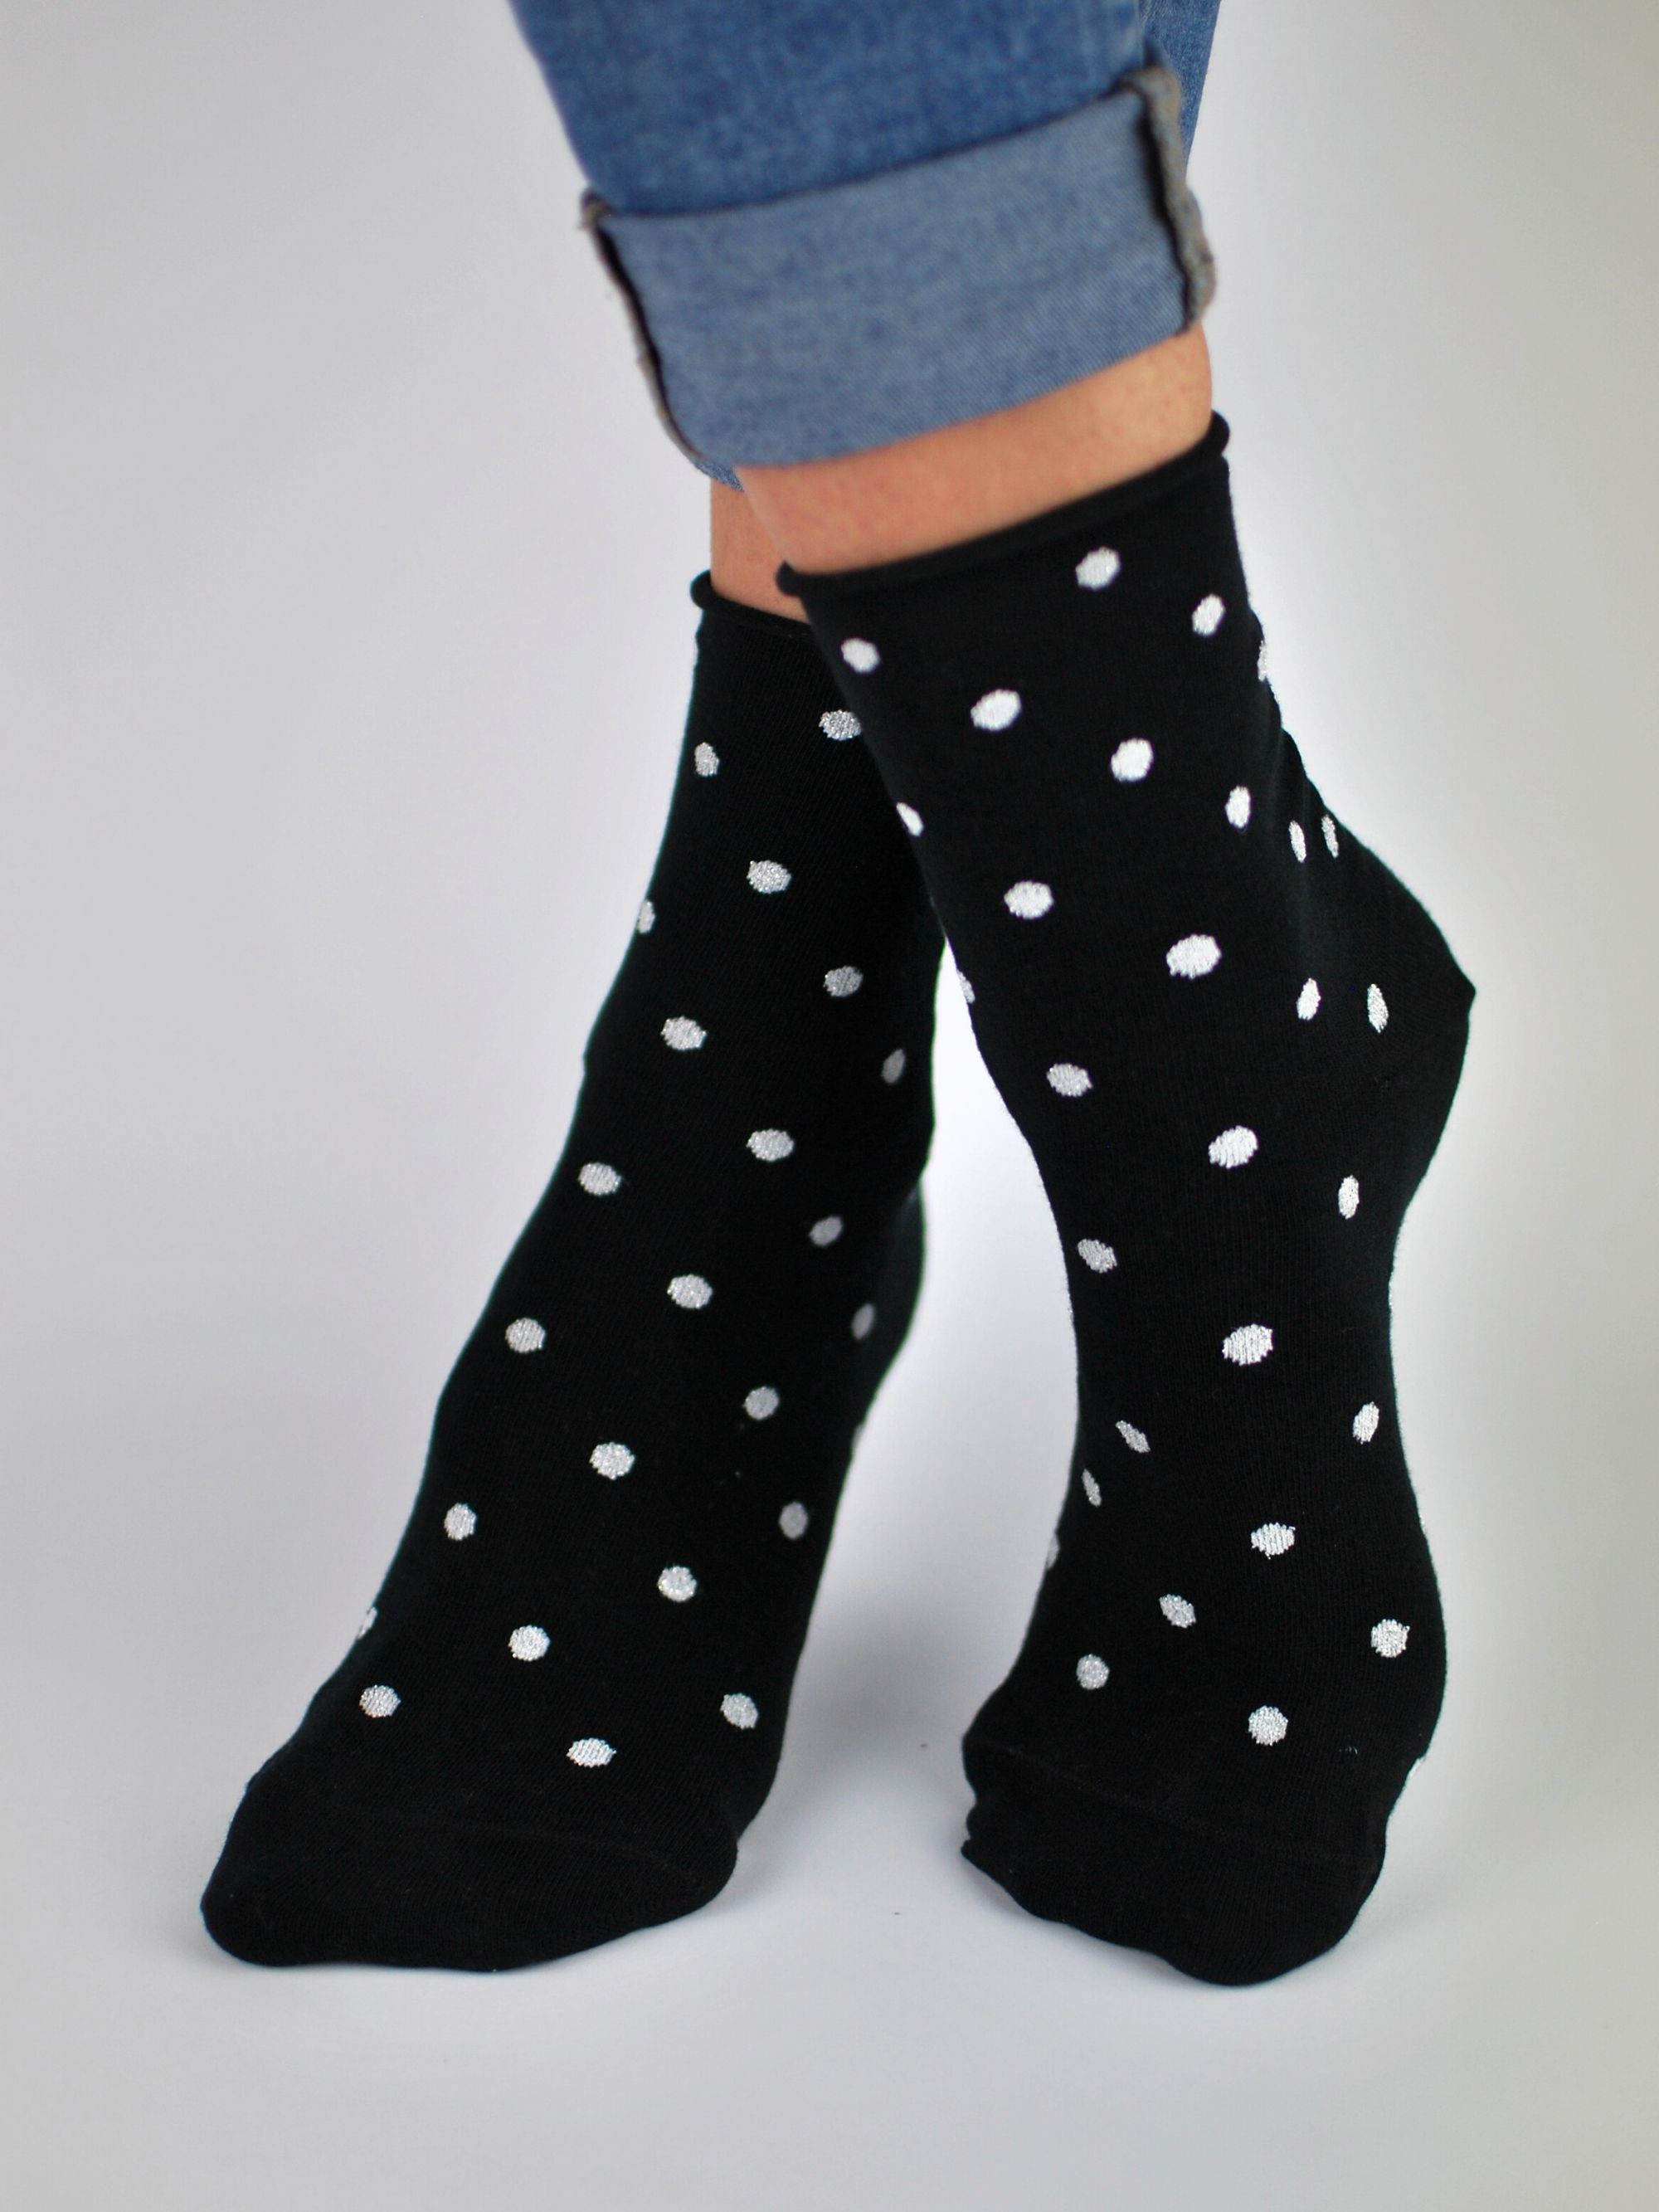 NOVITI Woman's Socks SB015-W-01